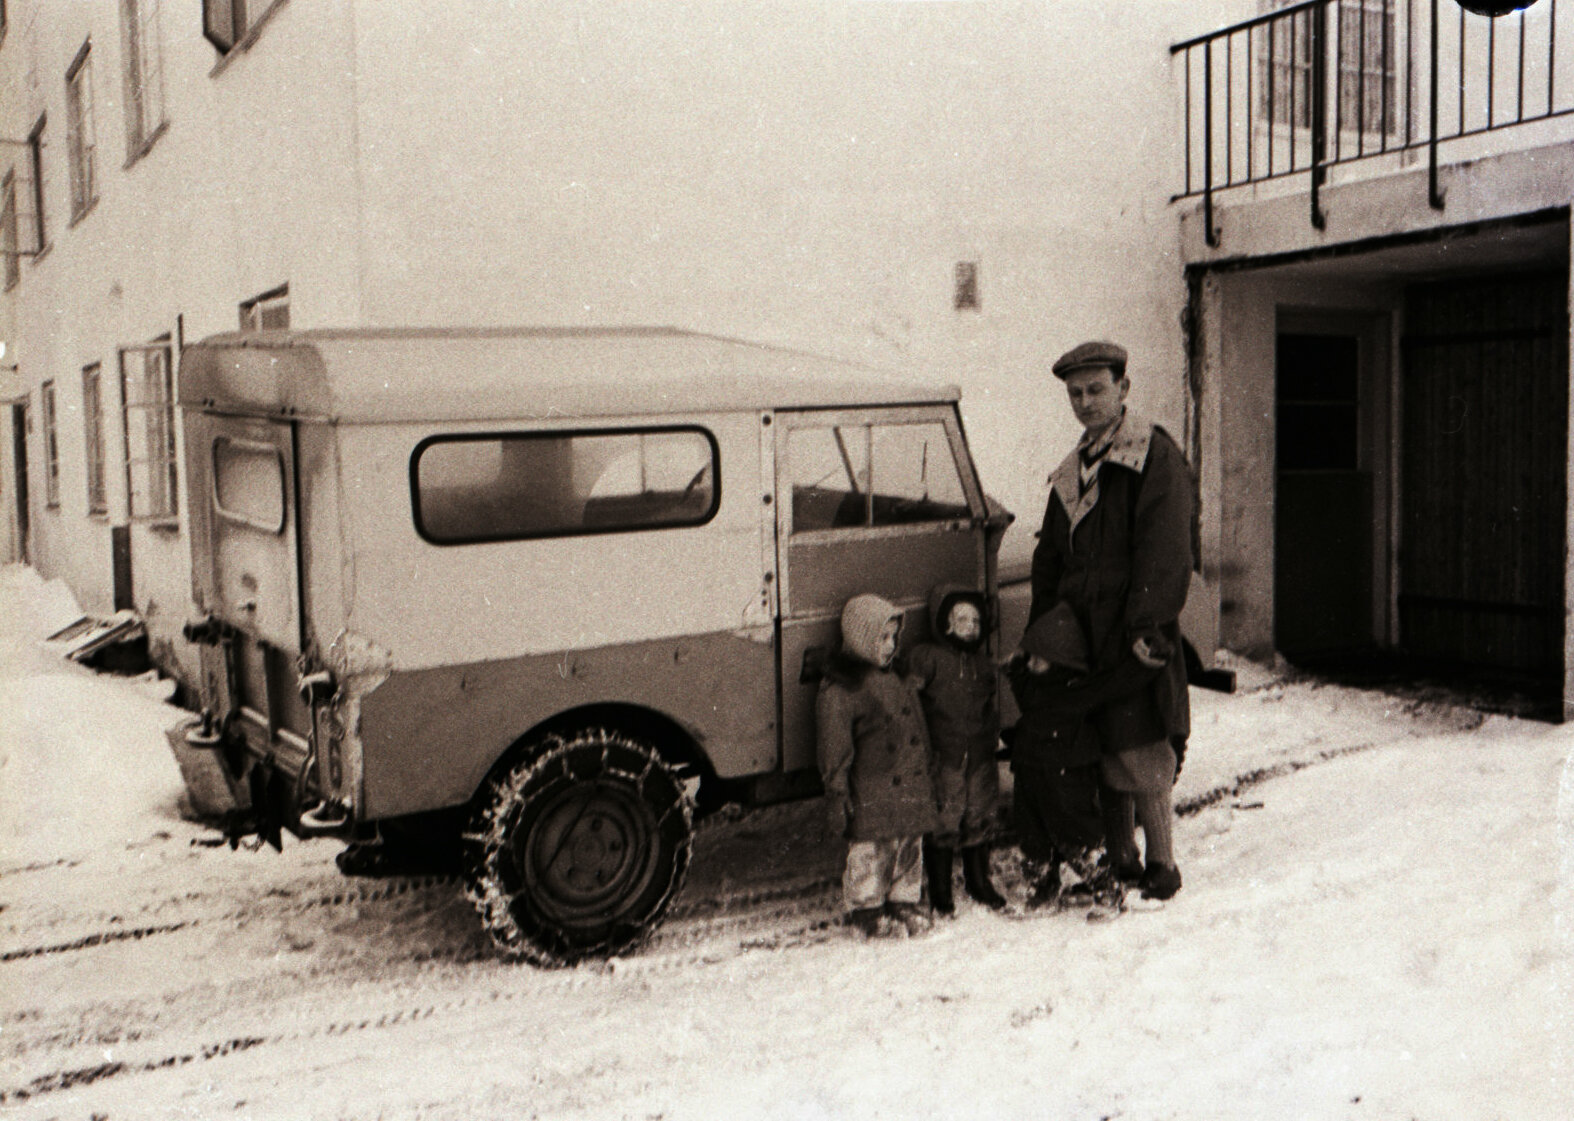 Morfar foran sykehusgarasjen sammen med Tove og Nina og et tredje barn.